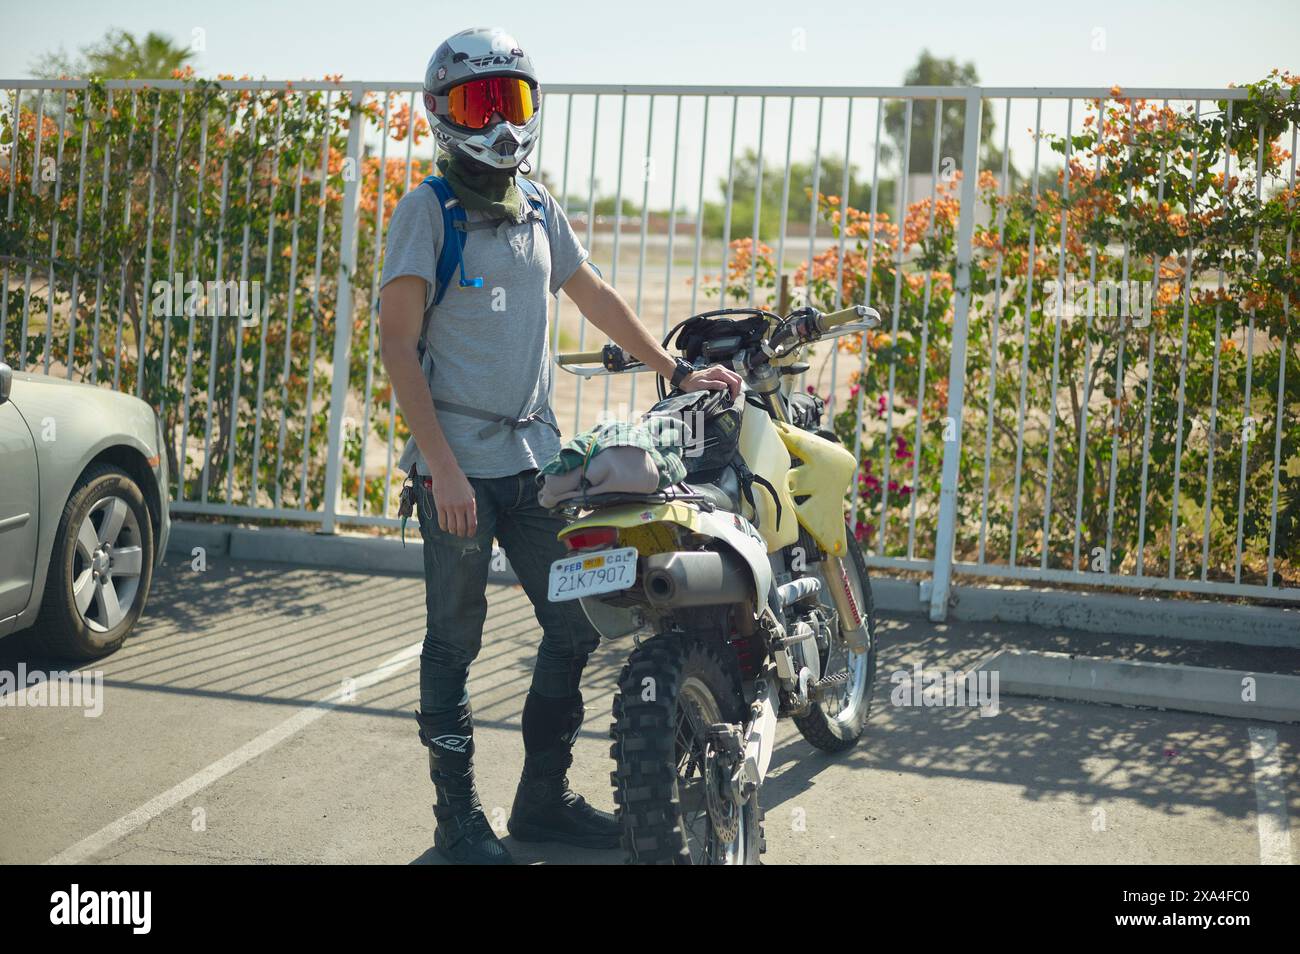 Un motocycliste se tient à côté d'une moto jaune garée par une journée ensoleillée, portant un casque, des gants et un sac à dos. Banque D'Images